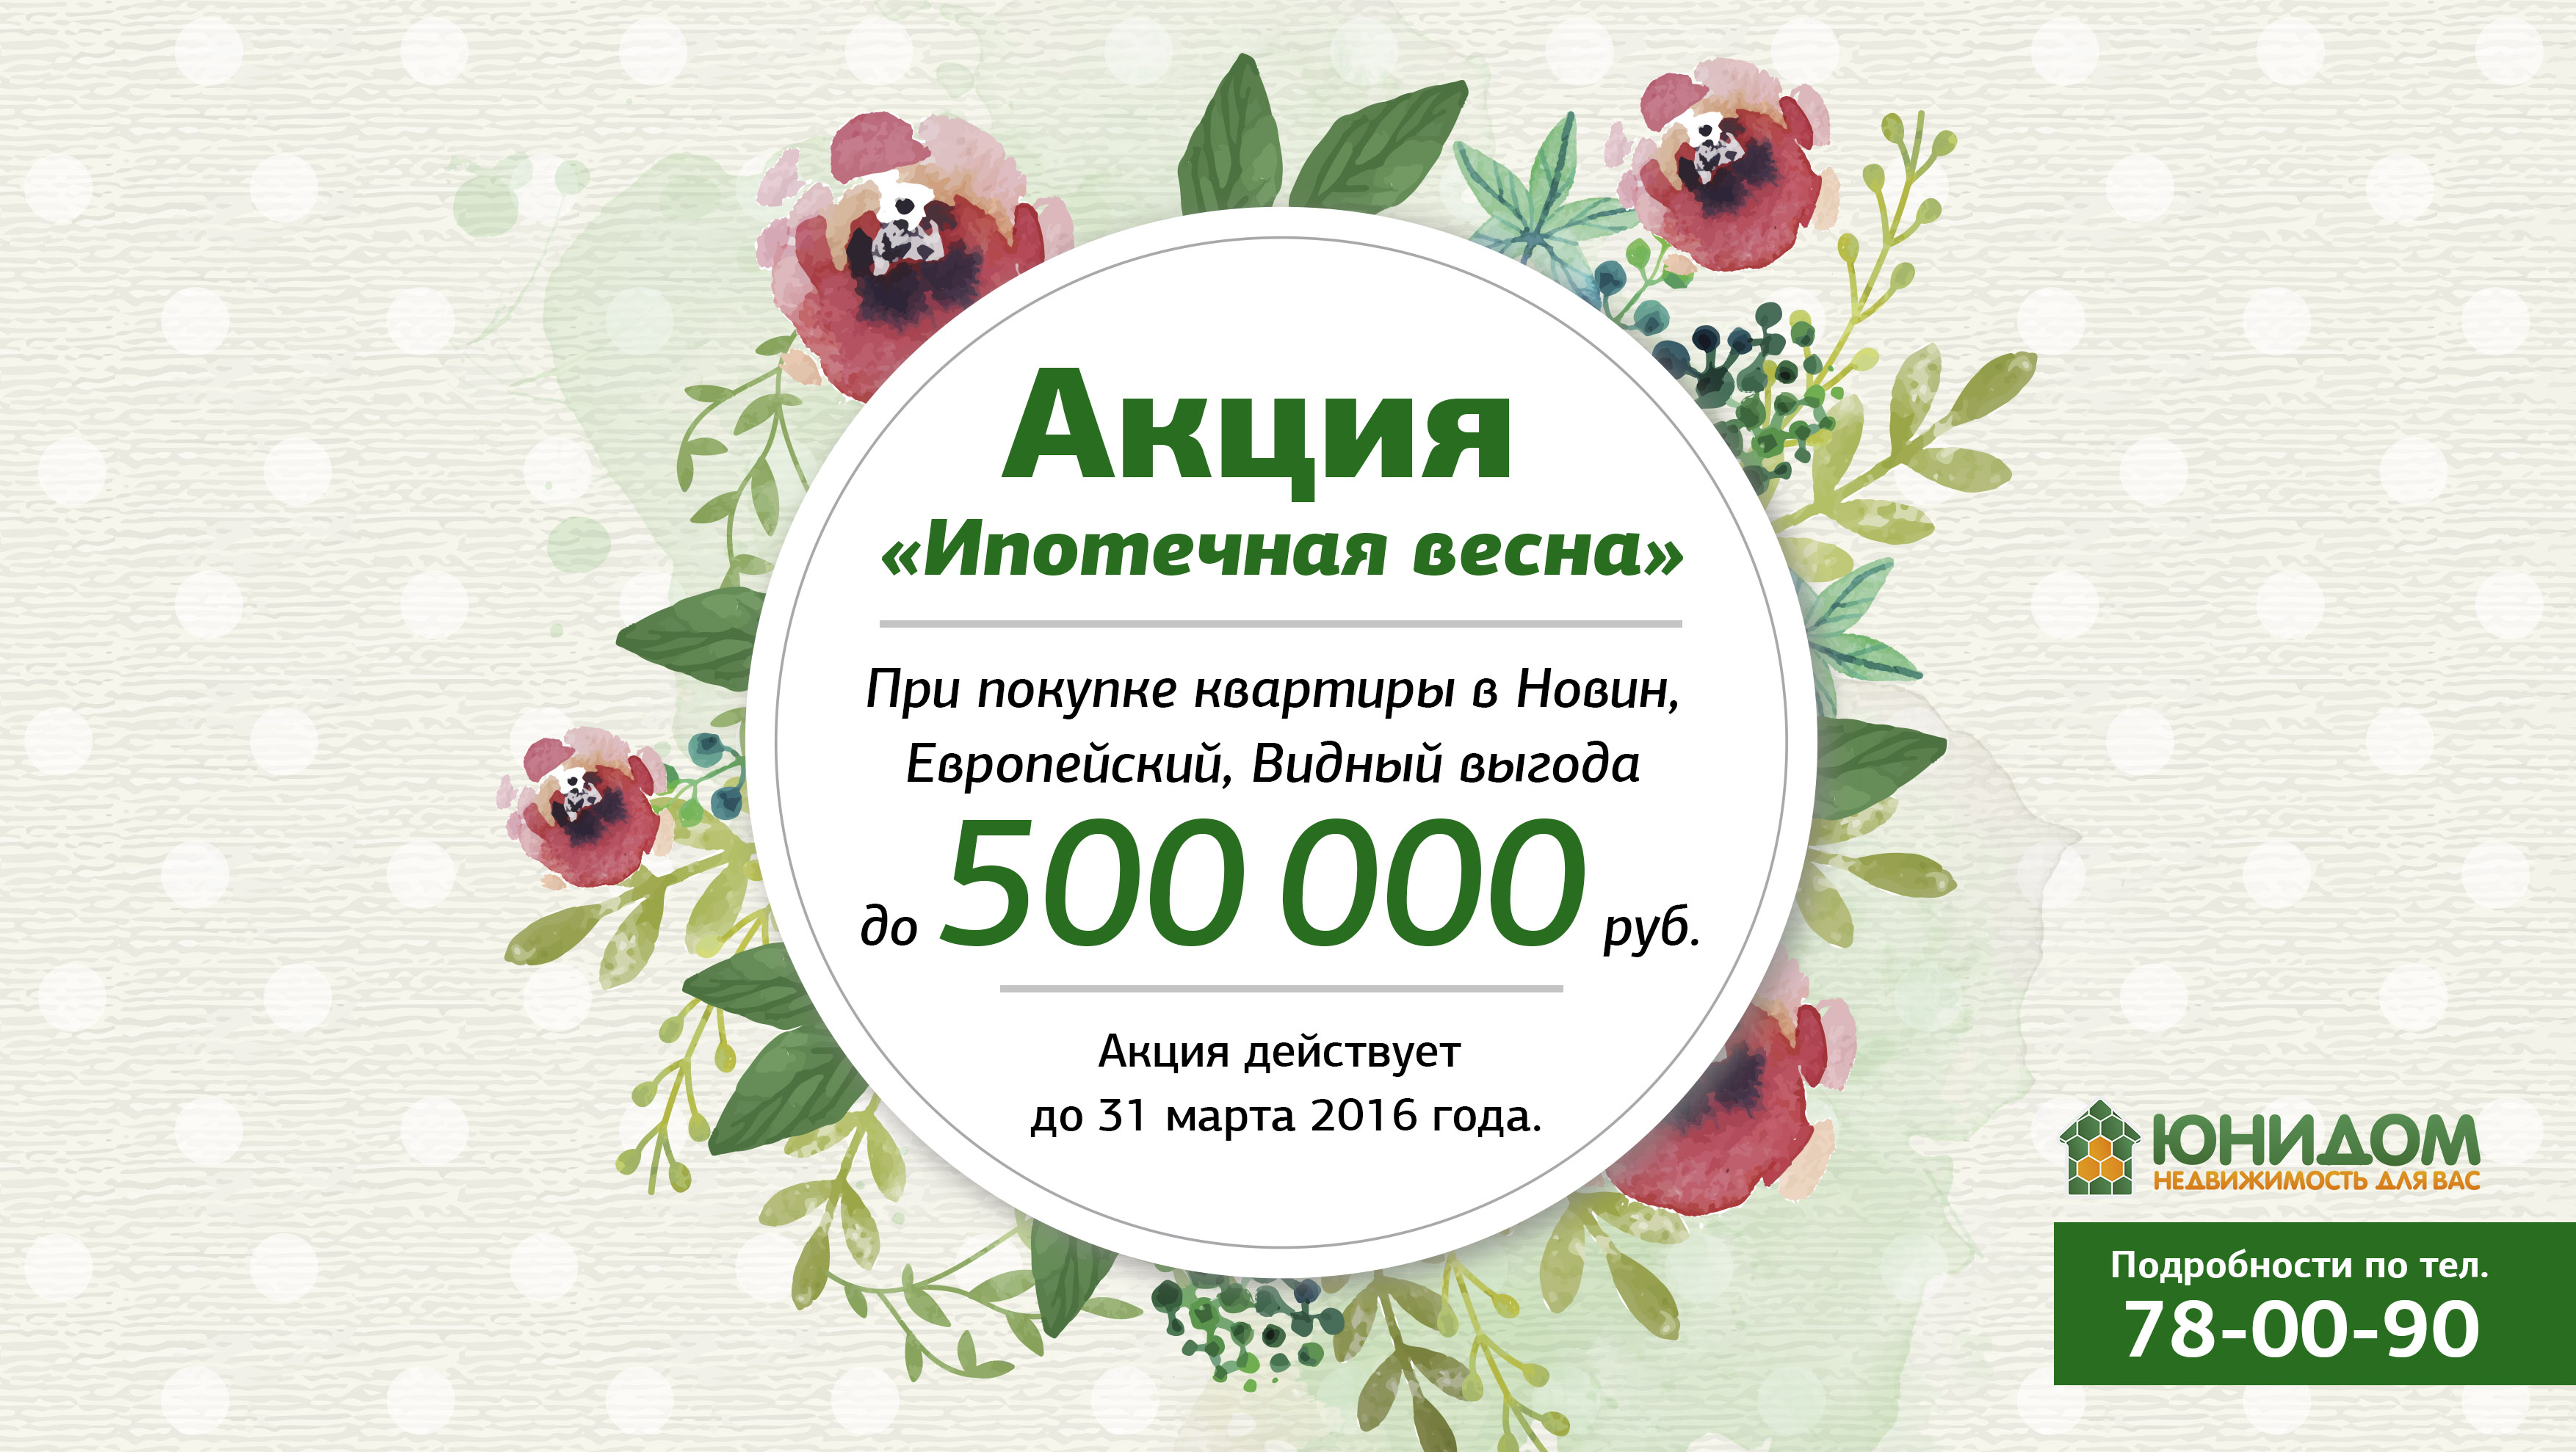 «Ипотечная весна» началась. Скидки на квартиры до 500 тыс. рублей!